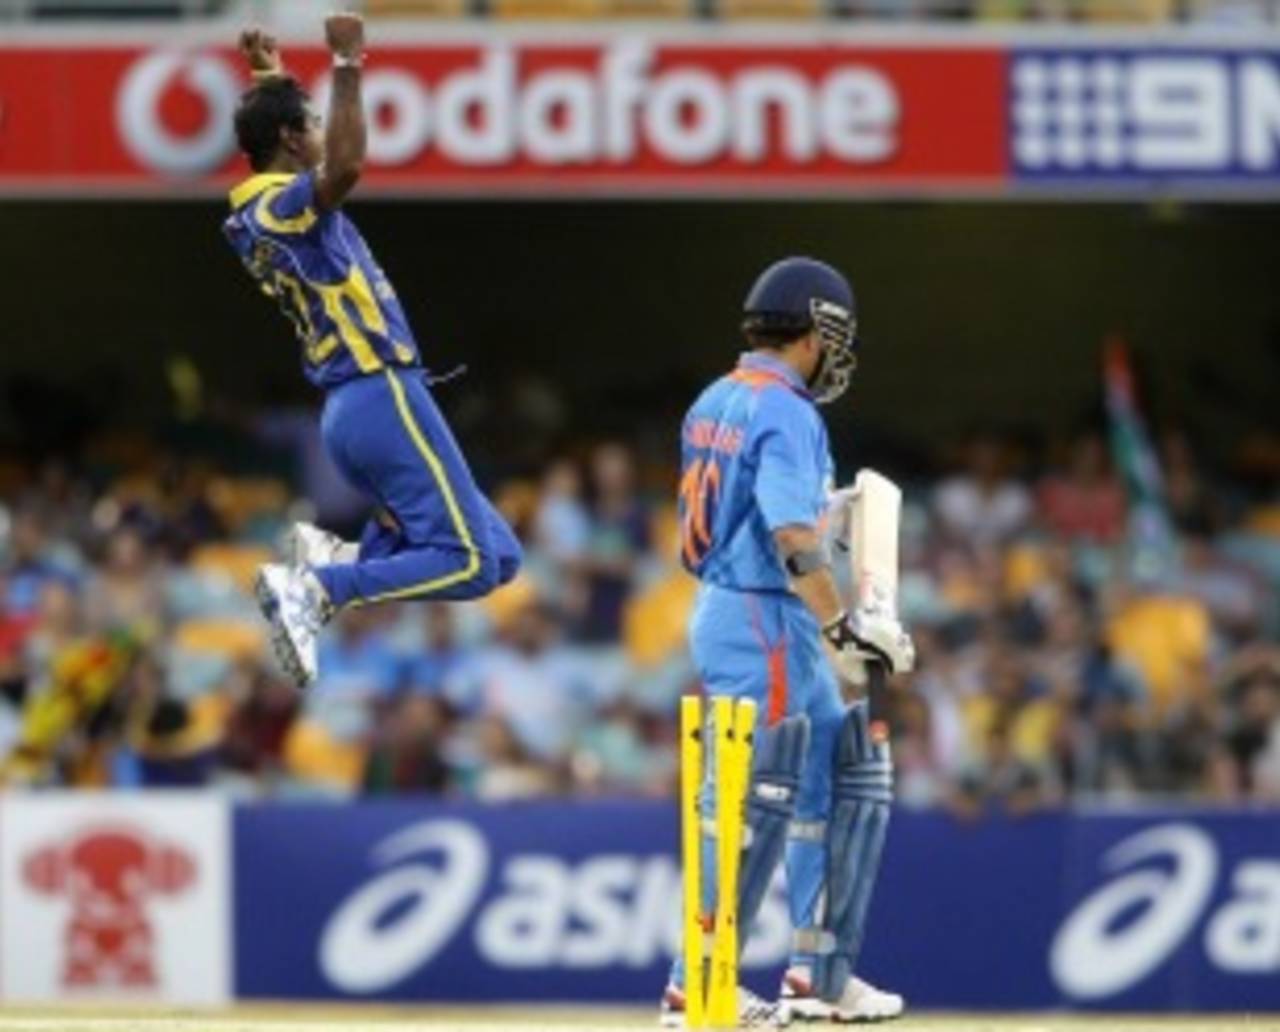 Nuwan Kulasekara celebrates Sachin Tendulkar's wicket, India v Sri Lanka, CB Series, Brisbane, February 21, 2012